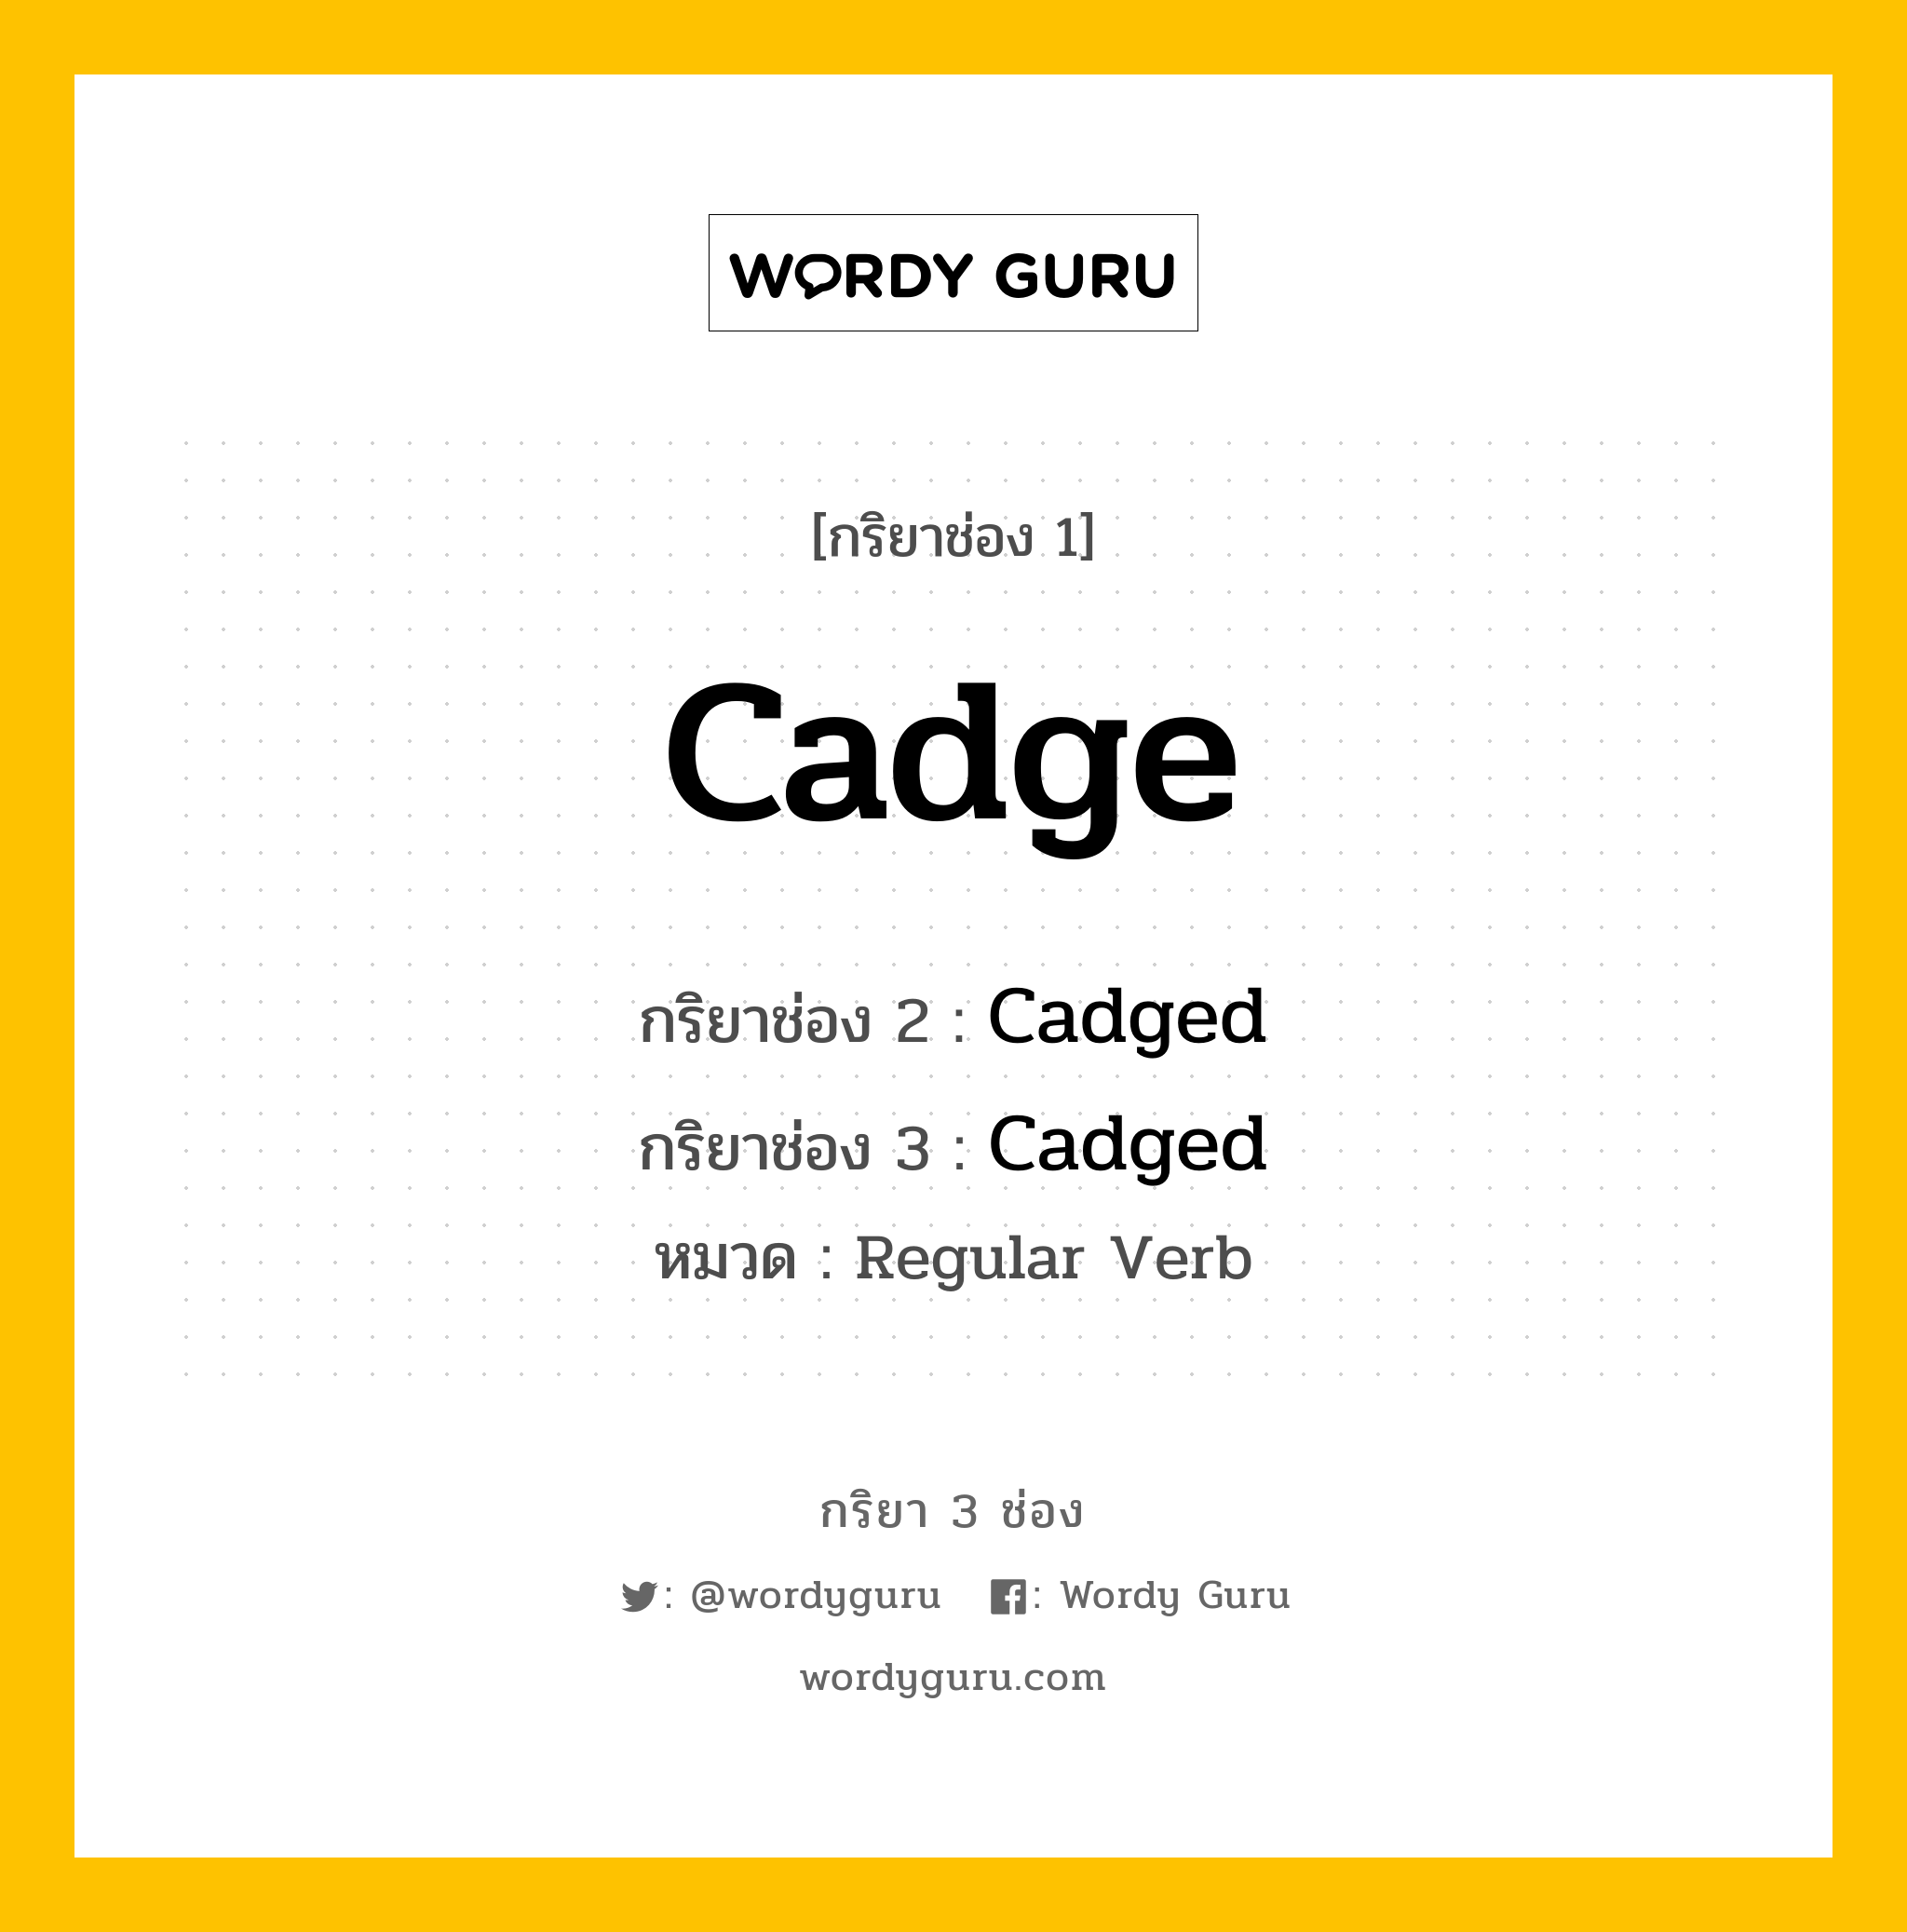 กริยา 3 ช่อง: Cadge ช่อง 2 Cadge ช่อง 3 คืออะไร, กริยาช่อง 1 Cadge กริยาช่อง 2 Cadged กริยาช่อง 3 Cadged หมวด Regular Verb หมวด Regular Verb